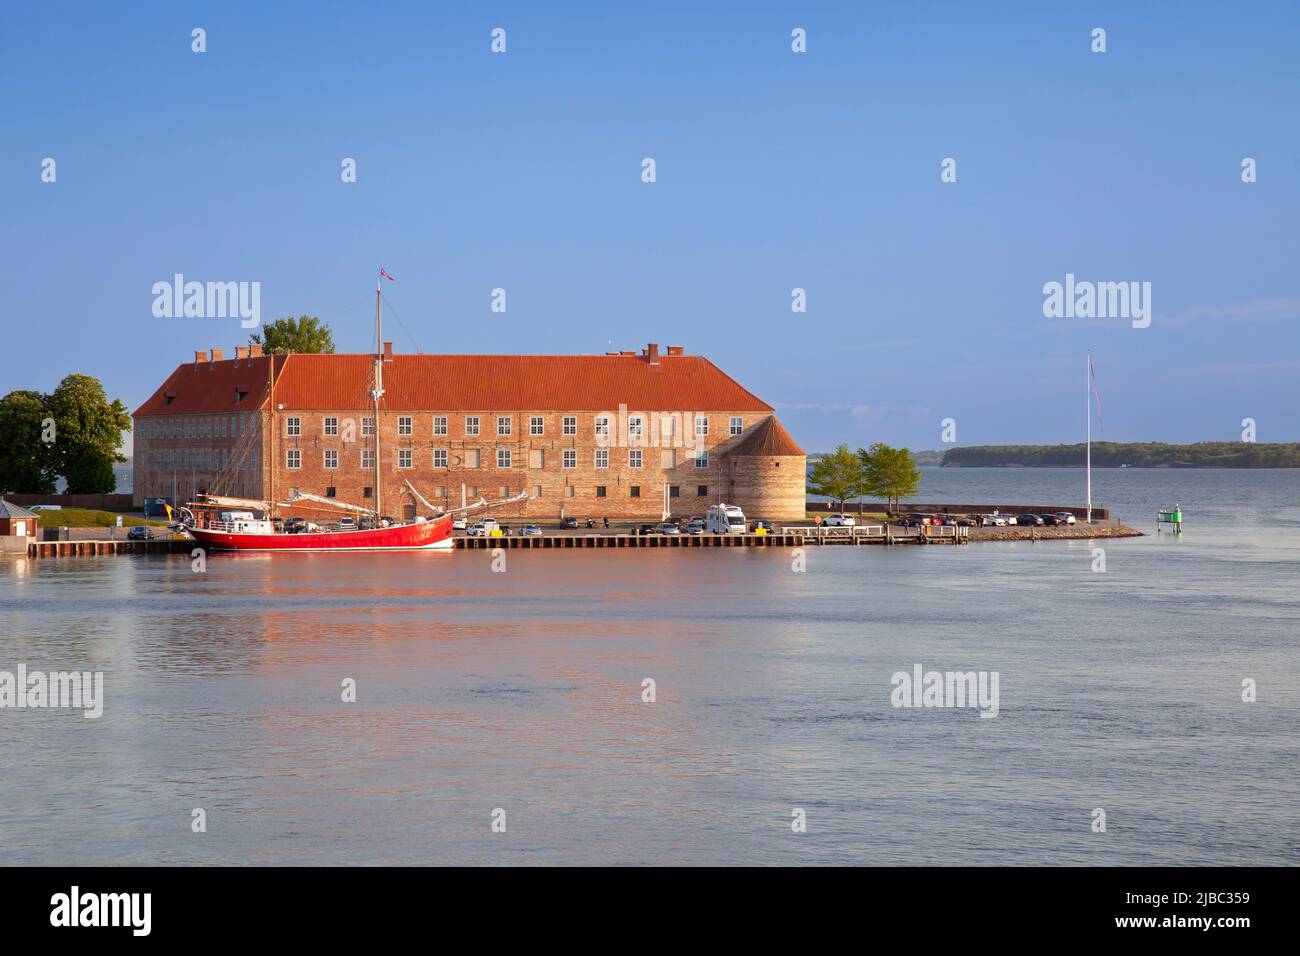 Castle Sonderborg,waterfront at the port of Sonderborg, Sonderborg, Denmark, Europe Stock Photo